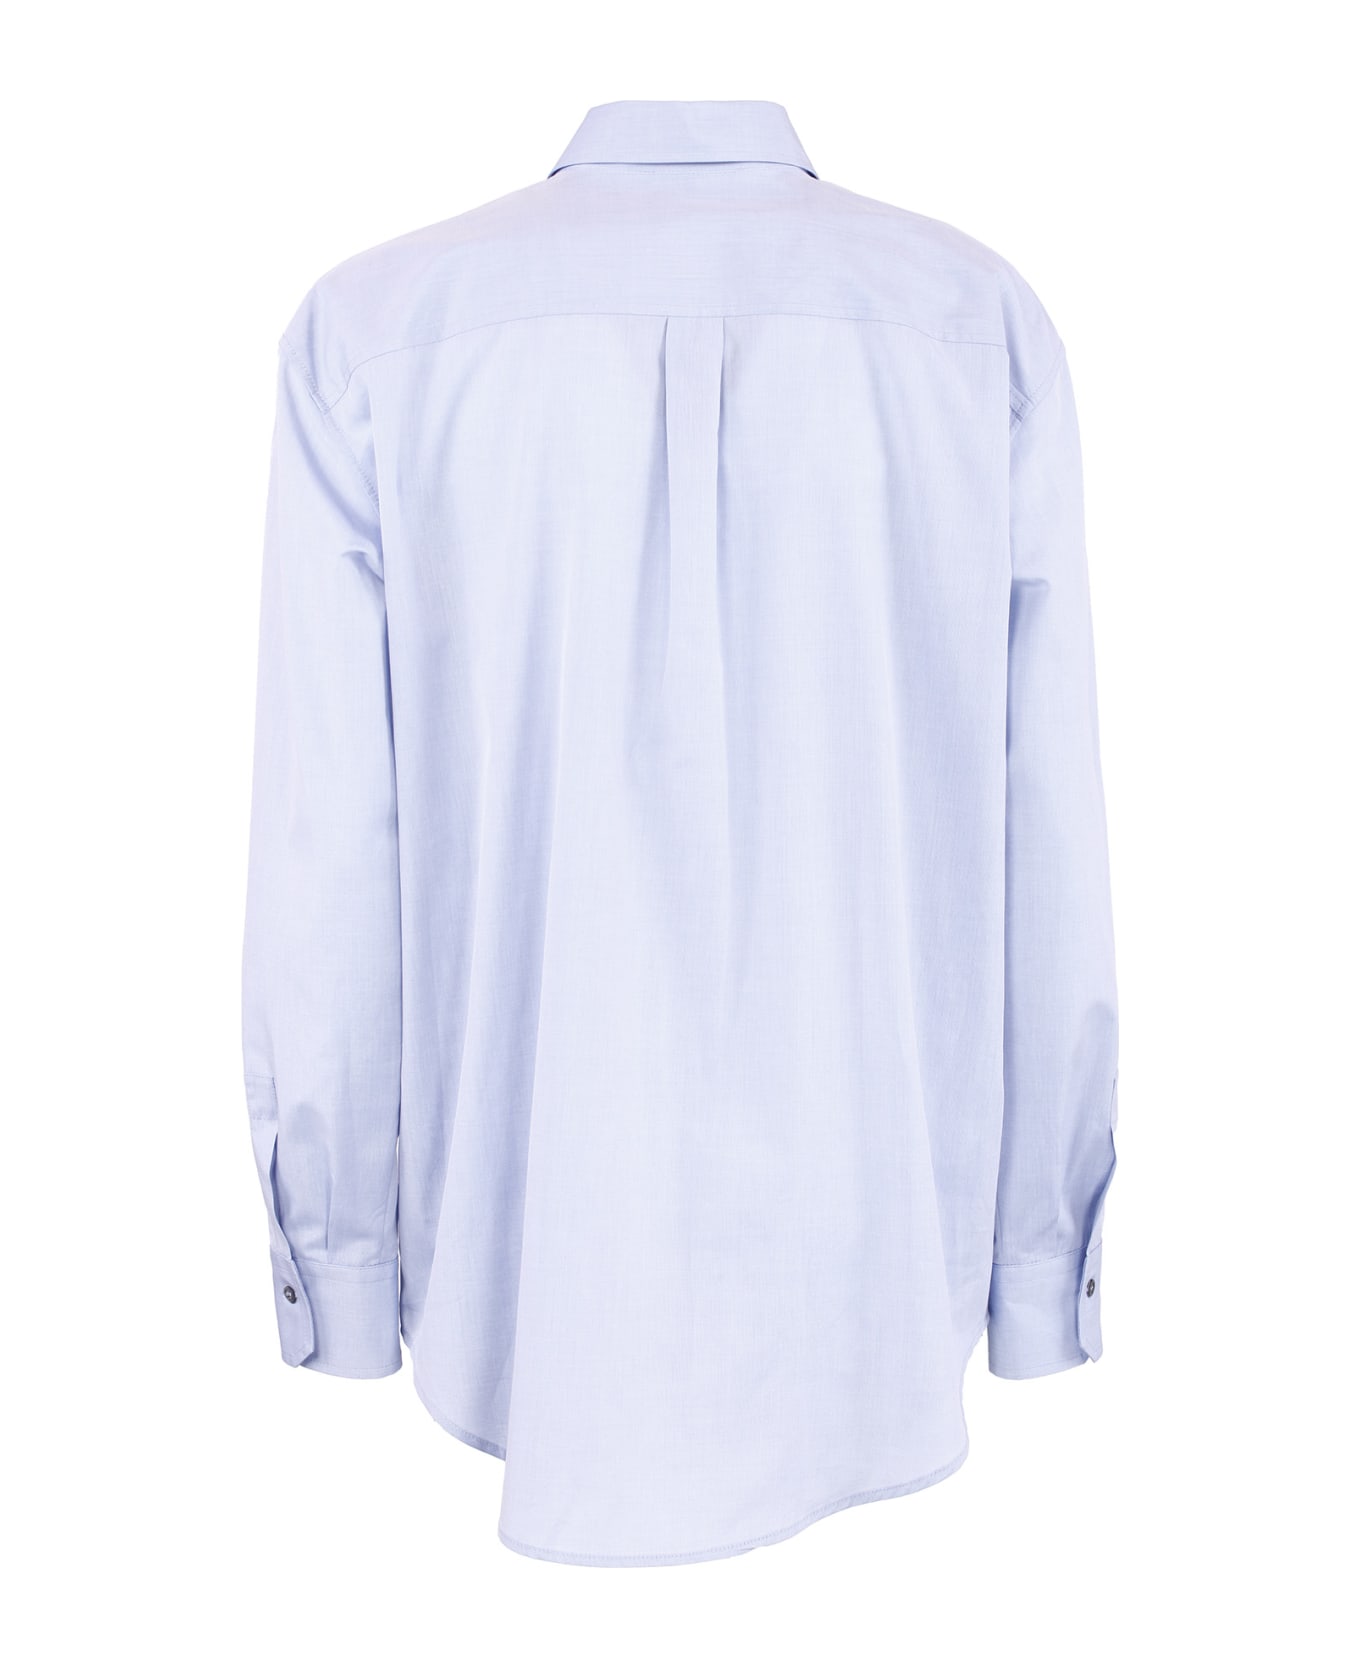 Antonelli Firenze Shirts Light Blue - Light Blue シャツ